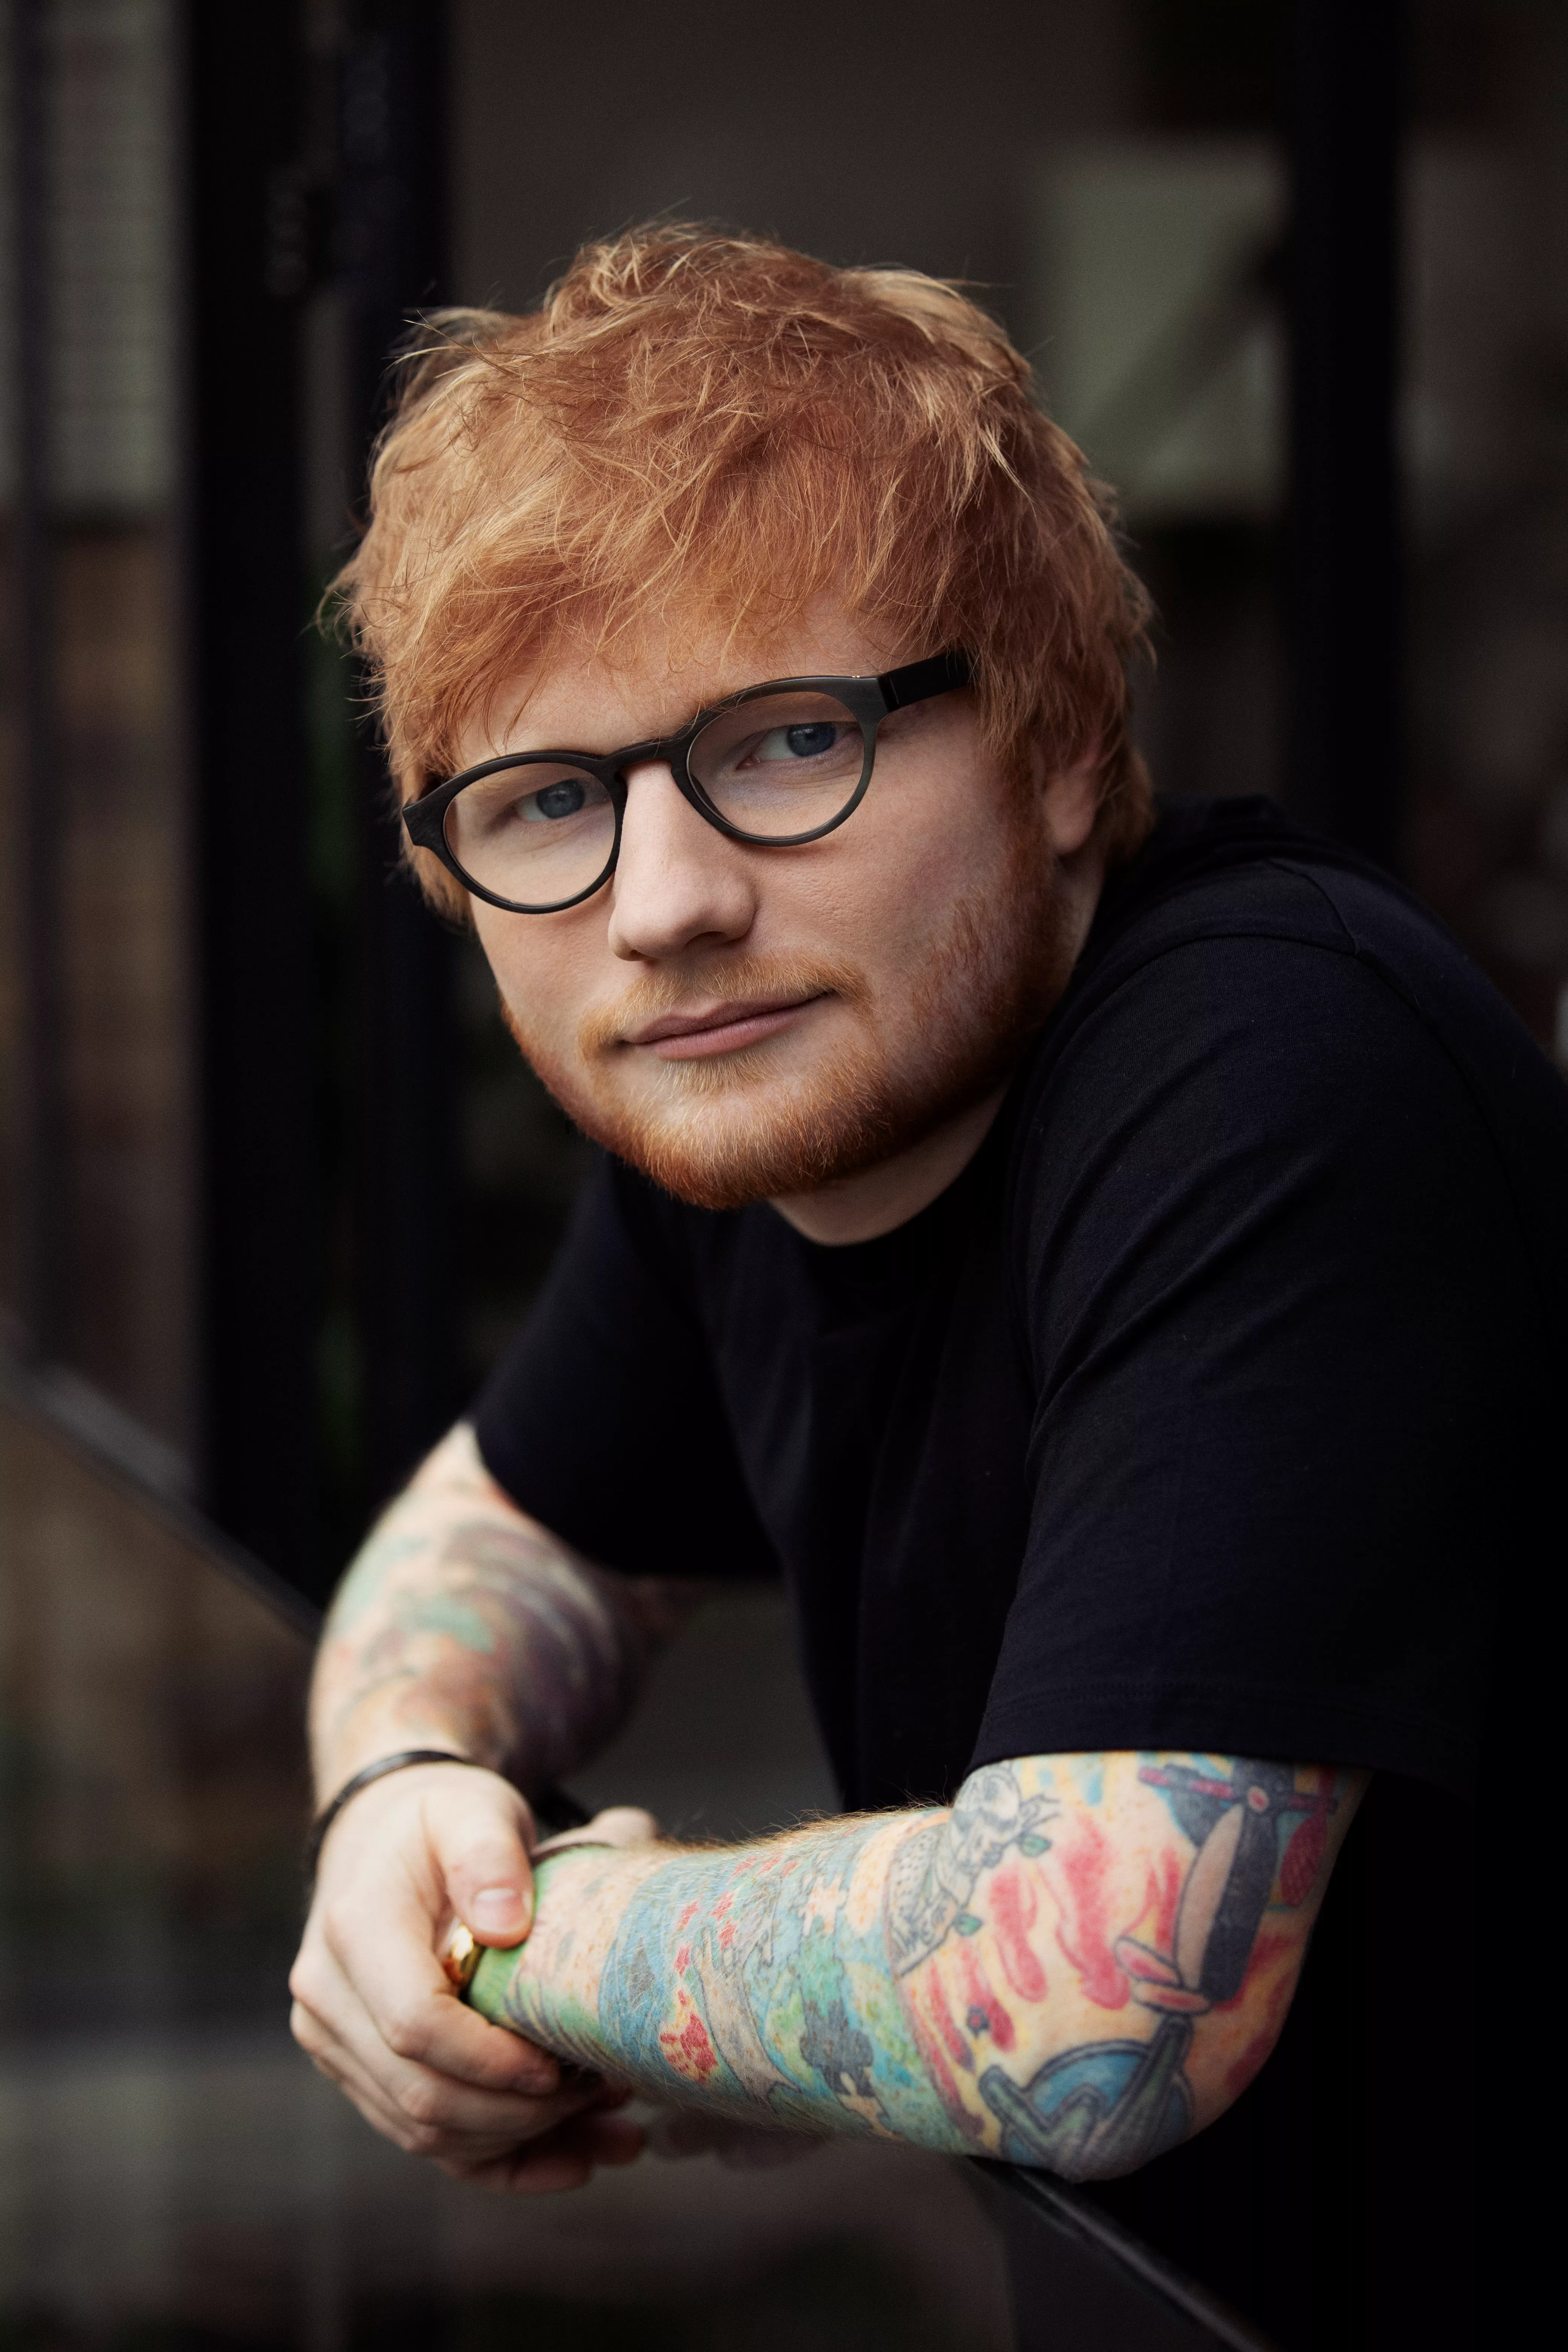 Ed Sheeran svarer på Wiley-kritik for at være en "culture vulture"